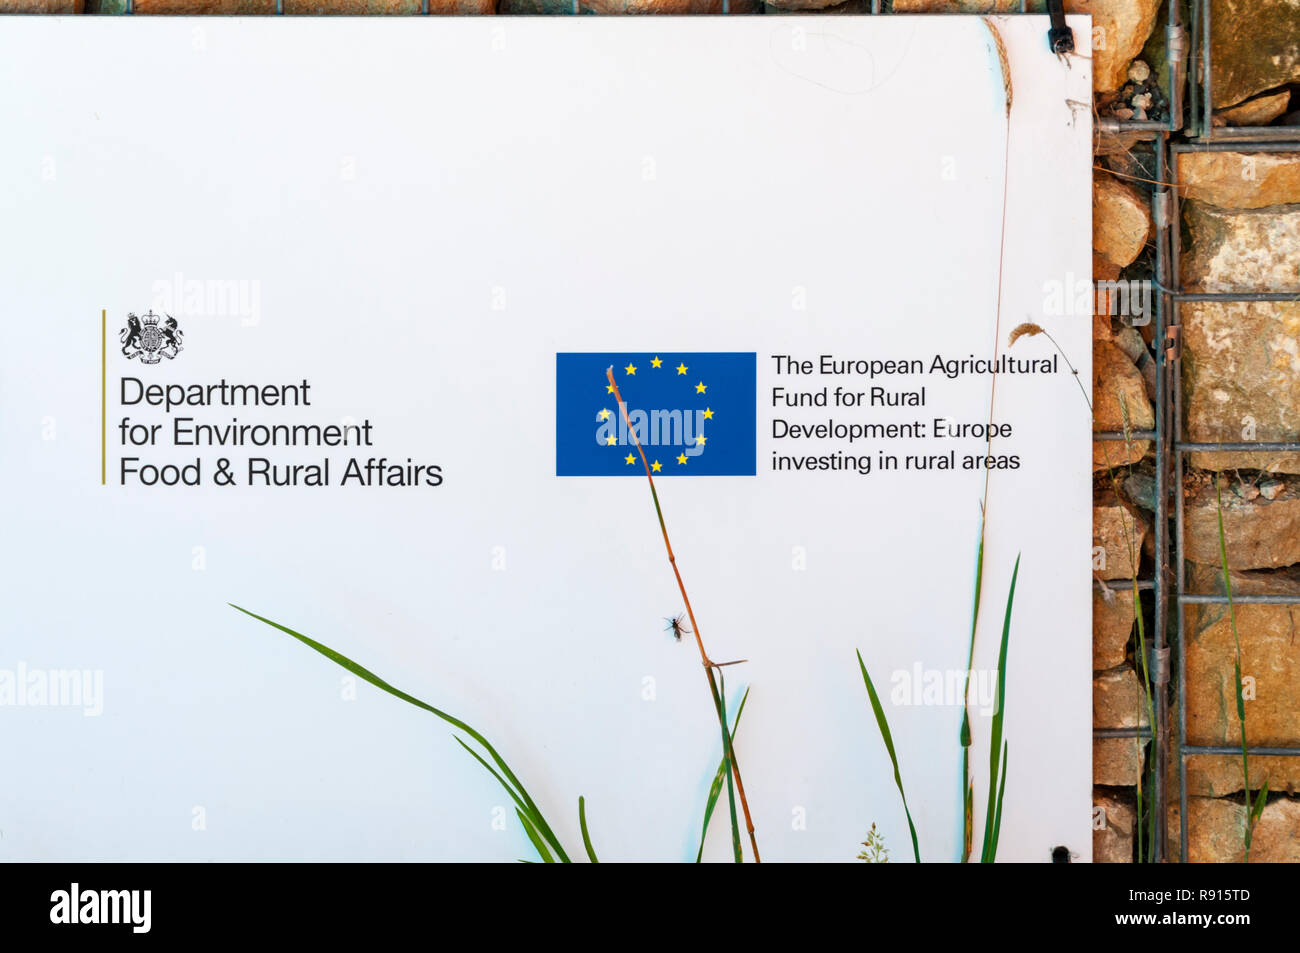 Ein Zeichen bei Bempton Cliffs erkennt an Beihilfen aus dem Europäischen Landwirtschaftsfonds für die Entwicklung des ländlichen Raums. Stockfoto